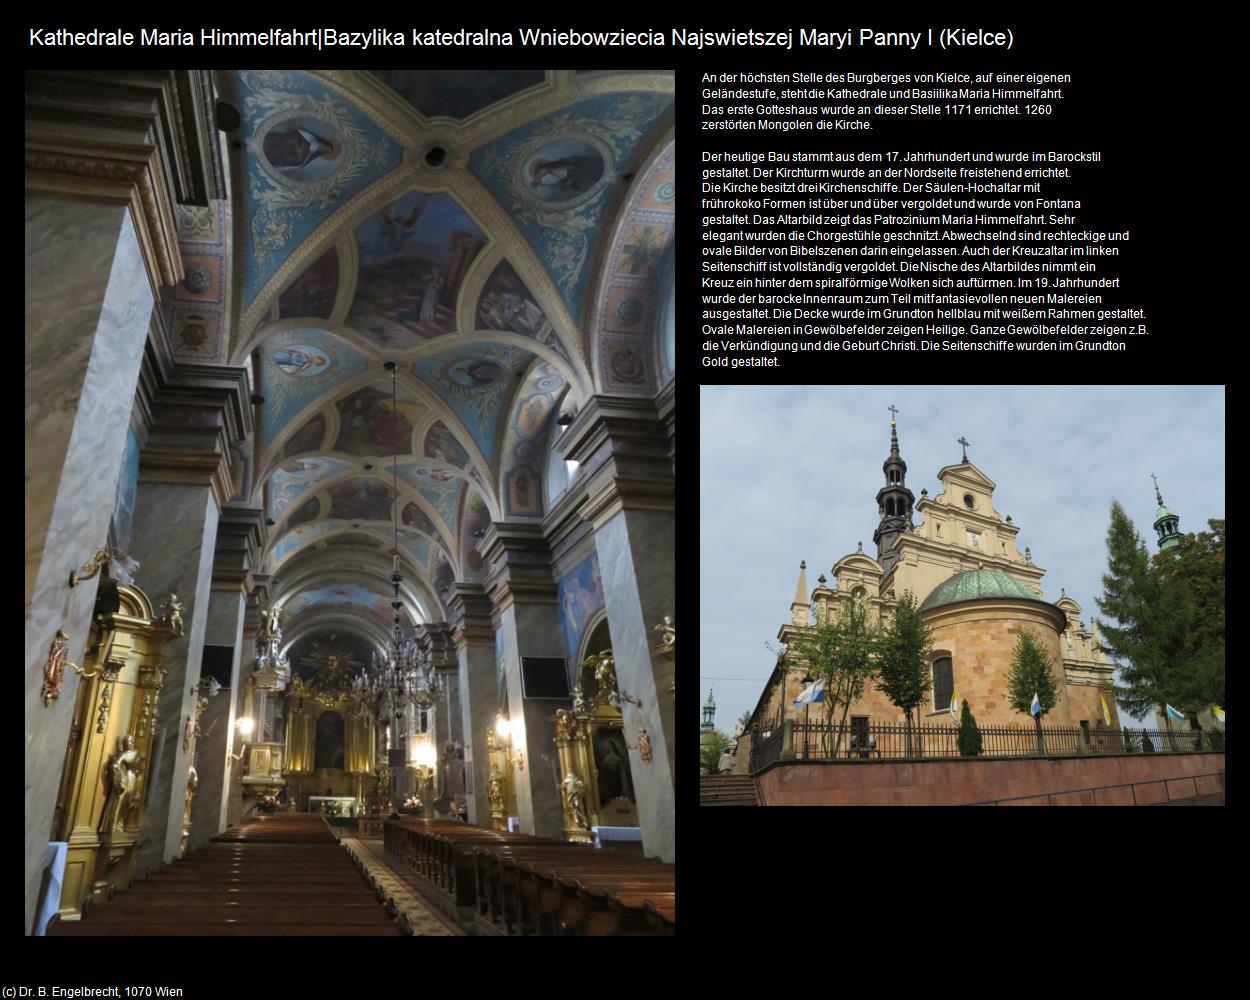 Kathedrale Maria Himmelfahrt I (Kielce) in POLEN-Galizien